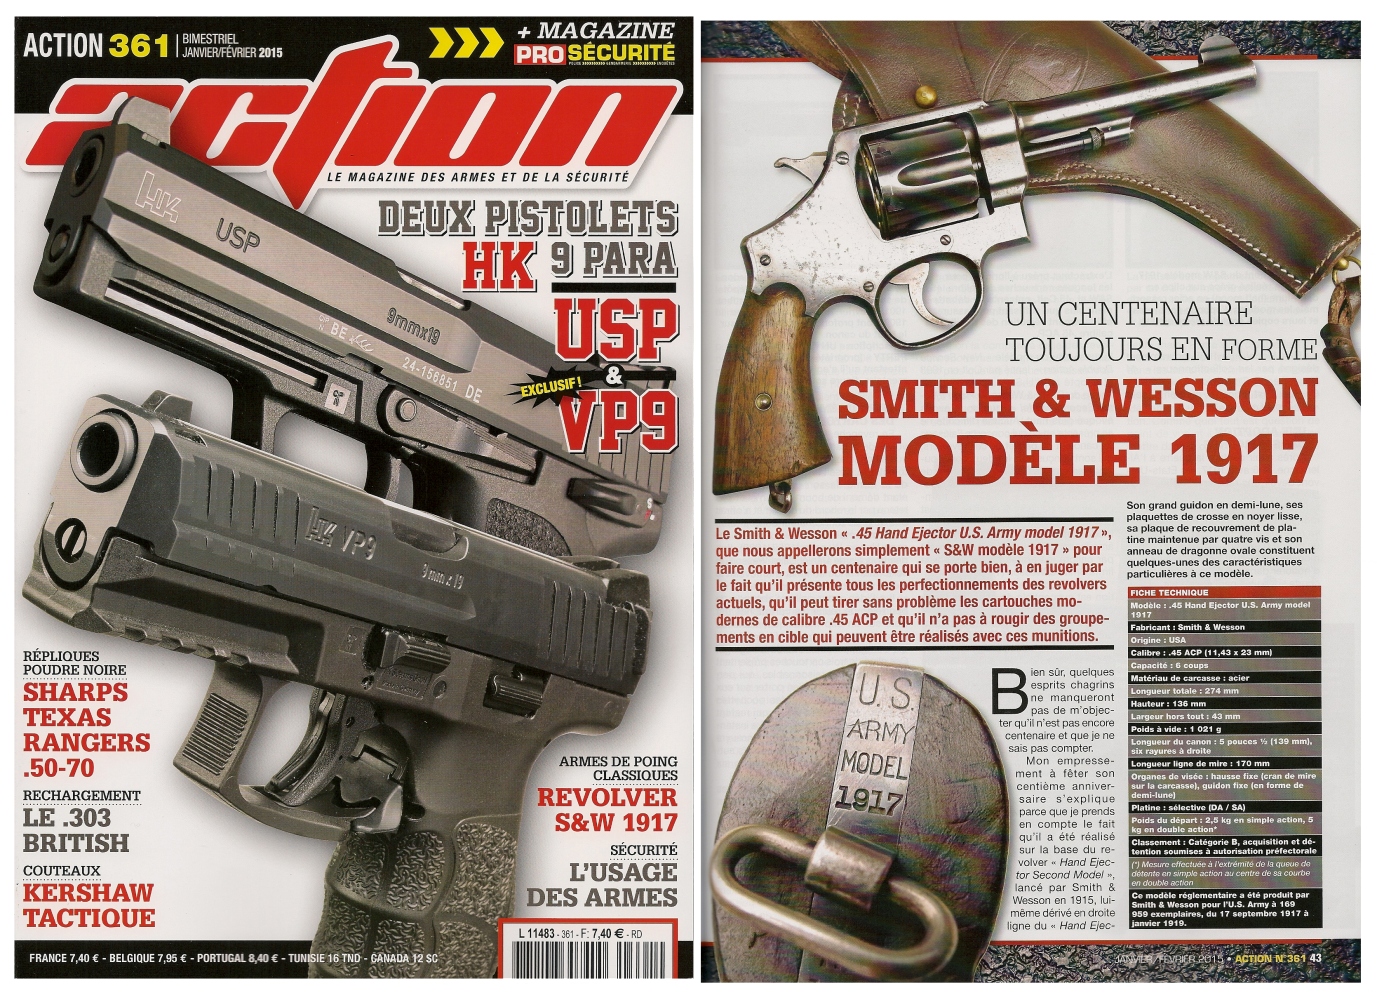 Le banc d'essai du revolver S&W modèle 1917 a été publié sur 6 pages dans le magazine Action n° 361 (janvier-février 2015).